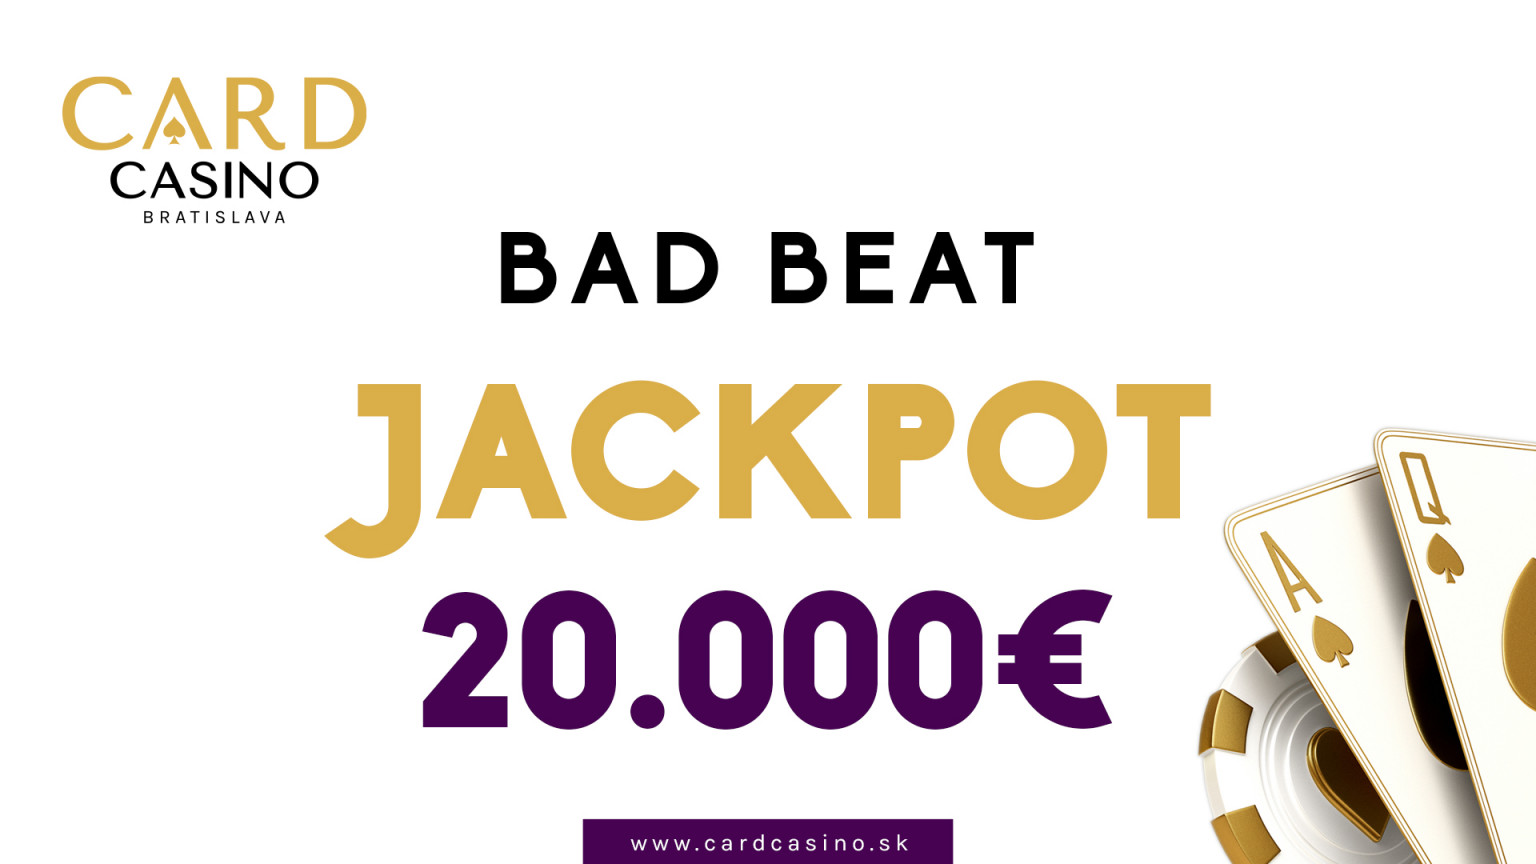 Spielen Sie das Card Casino Cash Game und sichern Sie sich einen Anteil am 20.000 € Jackpot